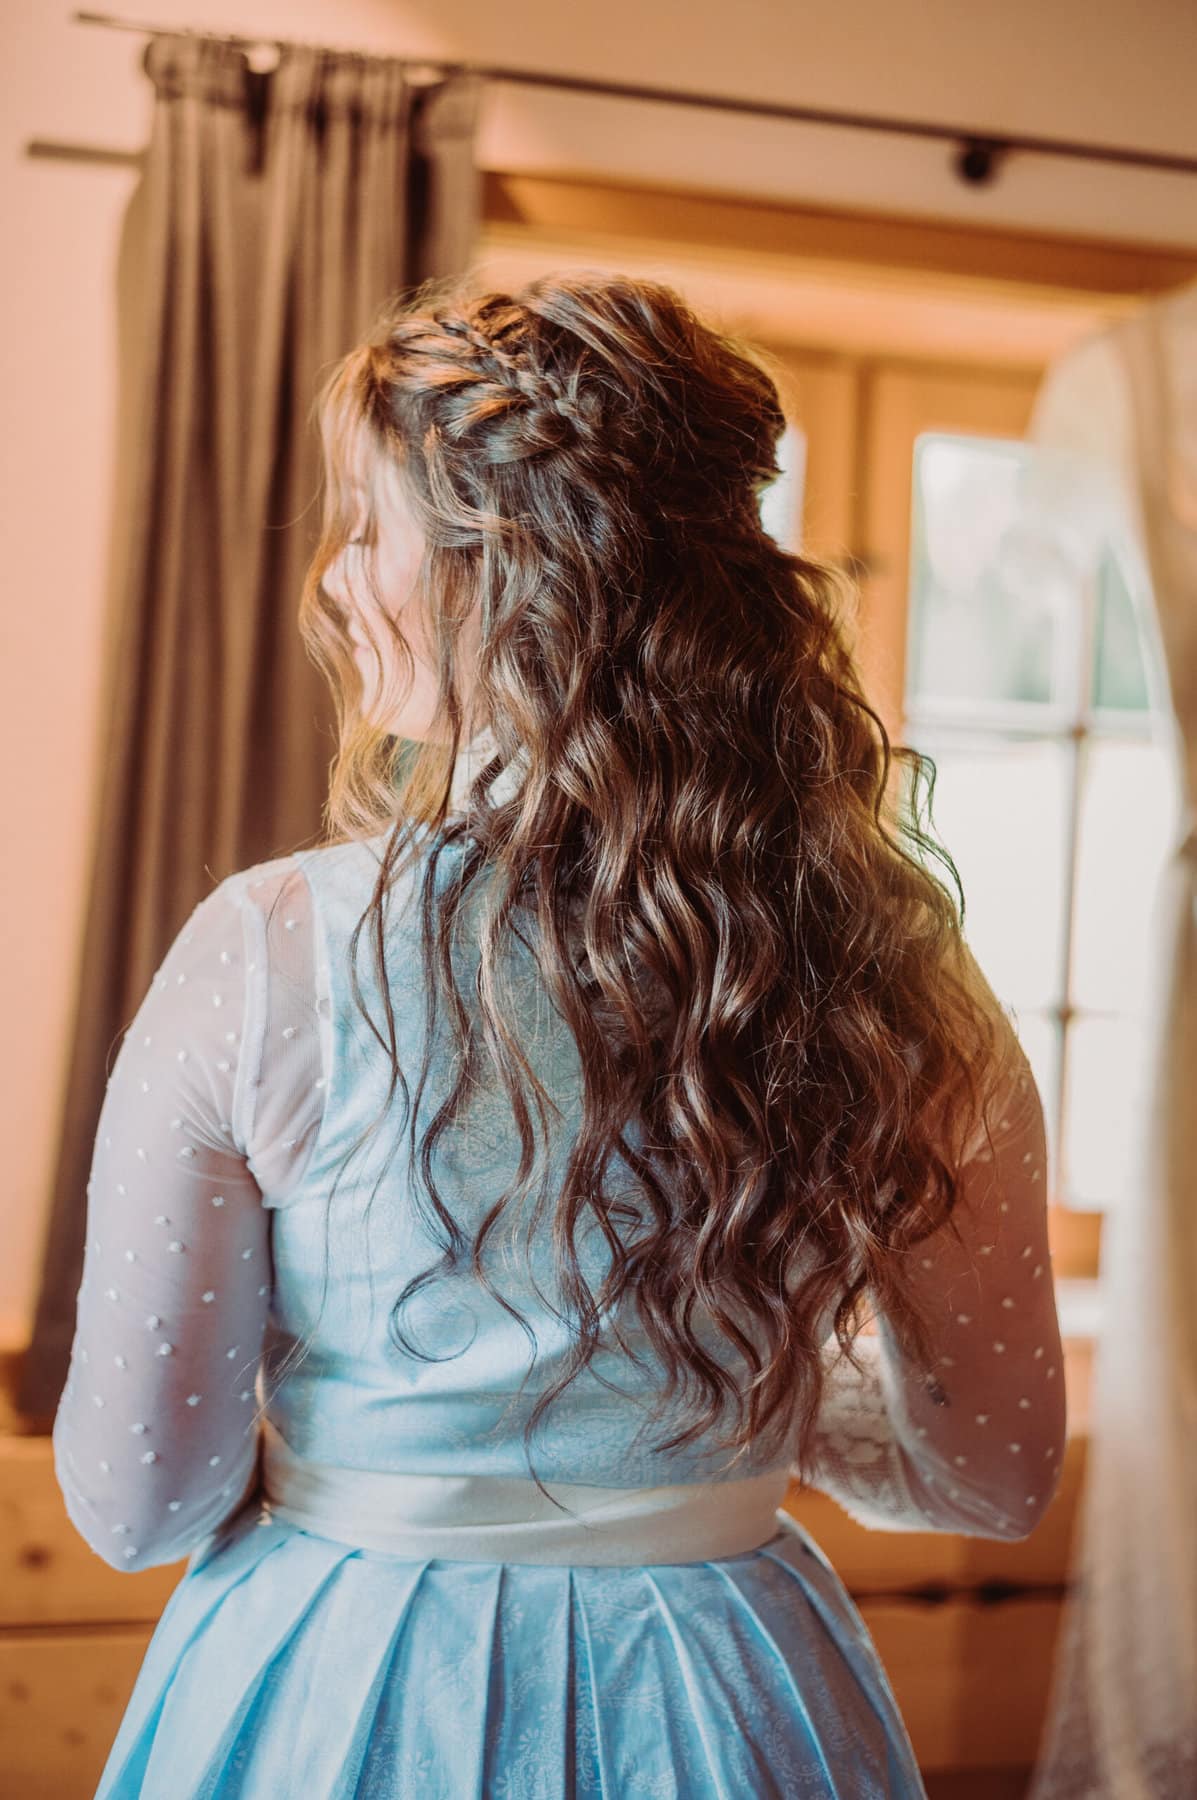 Das Getting Ready der Braut auf der Meckatzer Sportalp. Aufnahme der Braut von hinten mit den fertig gestylten Haaren.